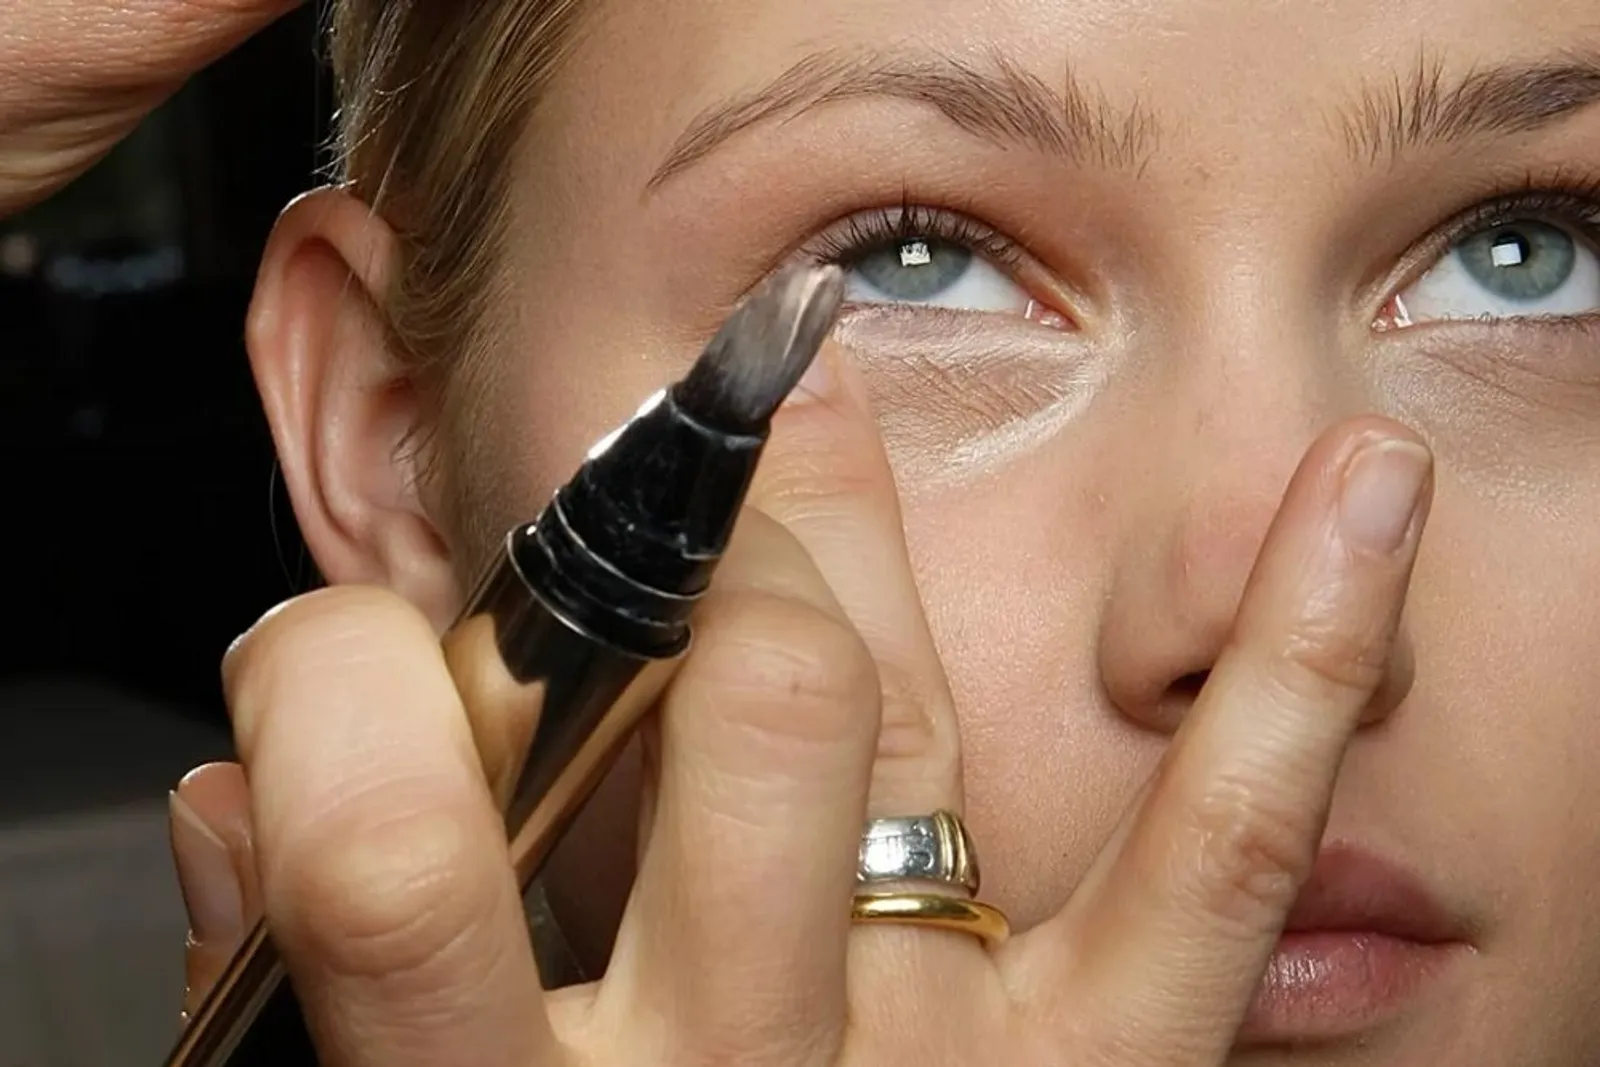 Deretan Produk Makeup yang Bisa Bikin Riasan Tampak Glowing